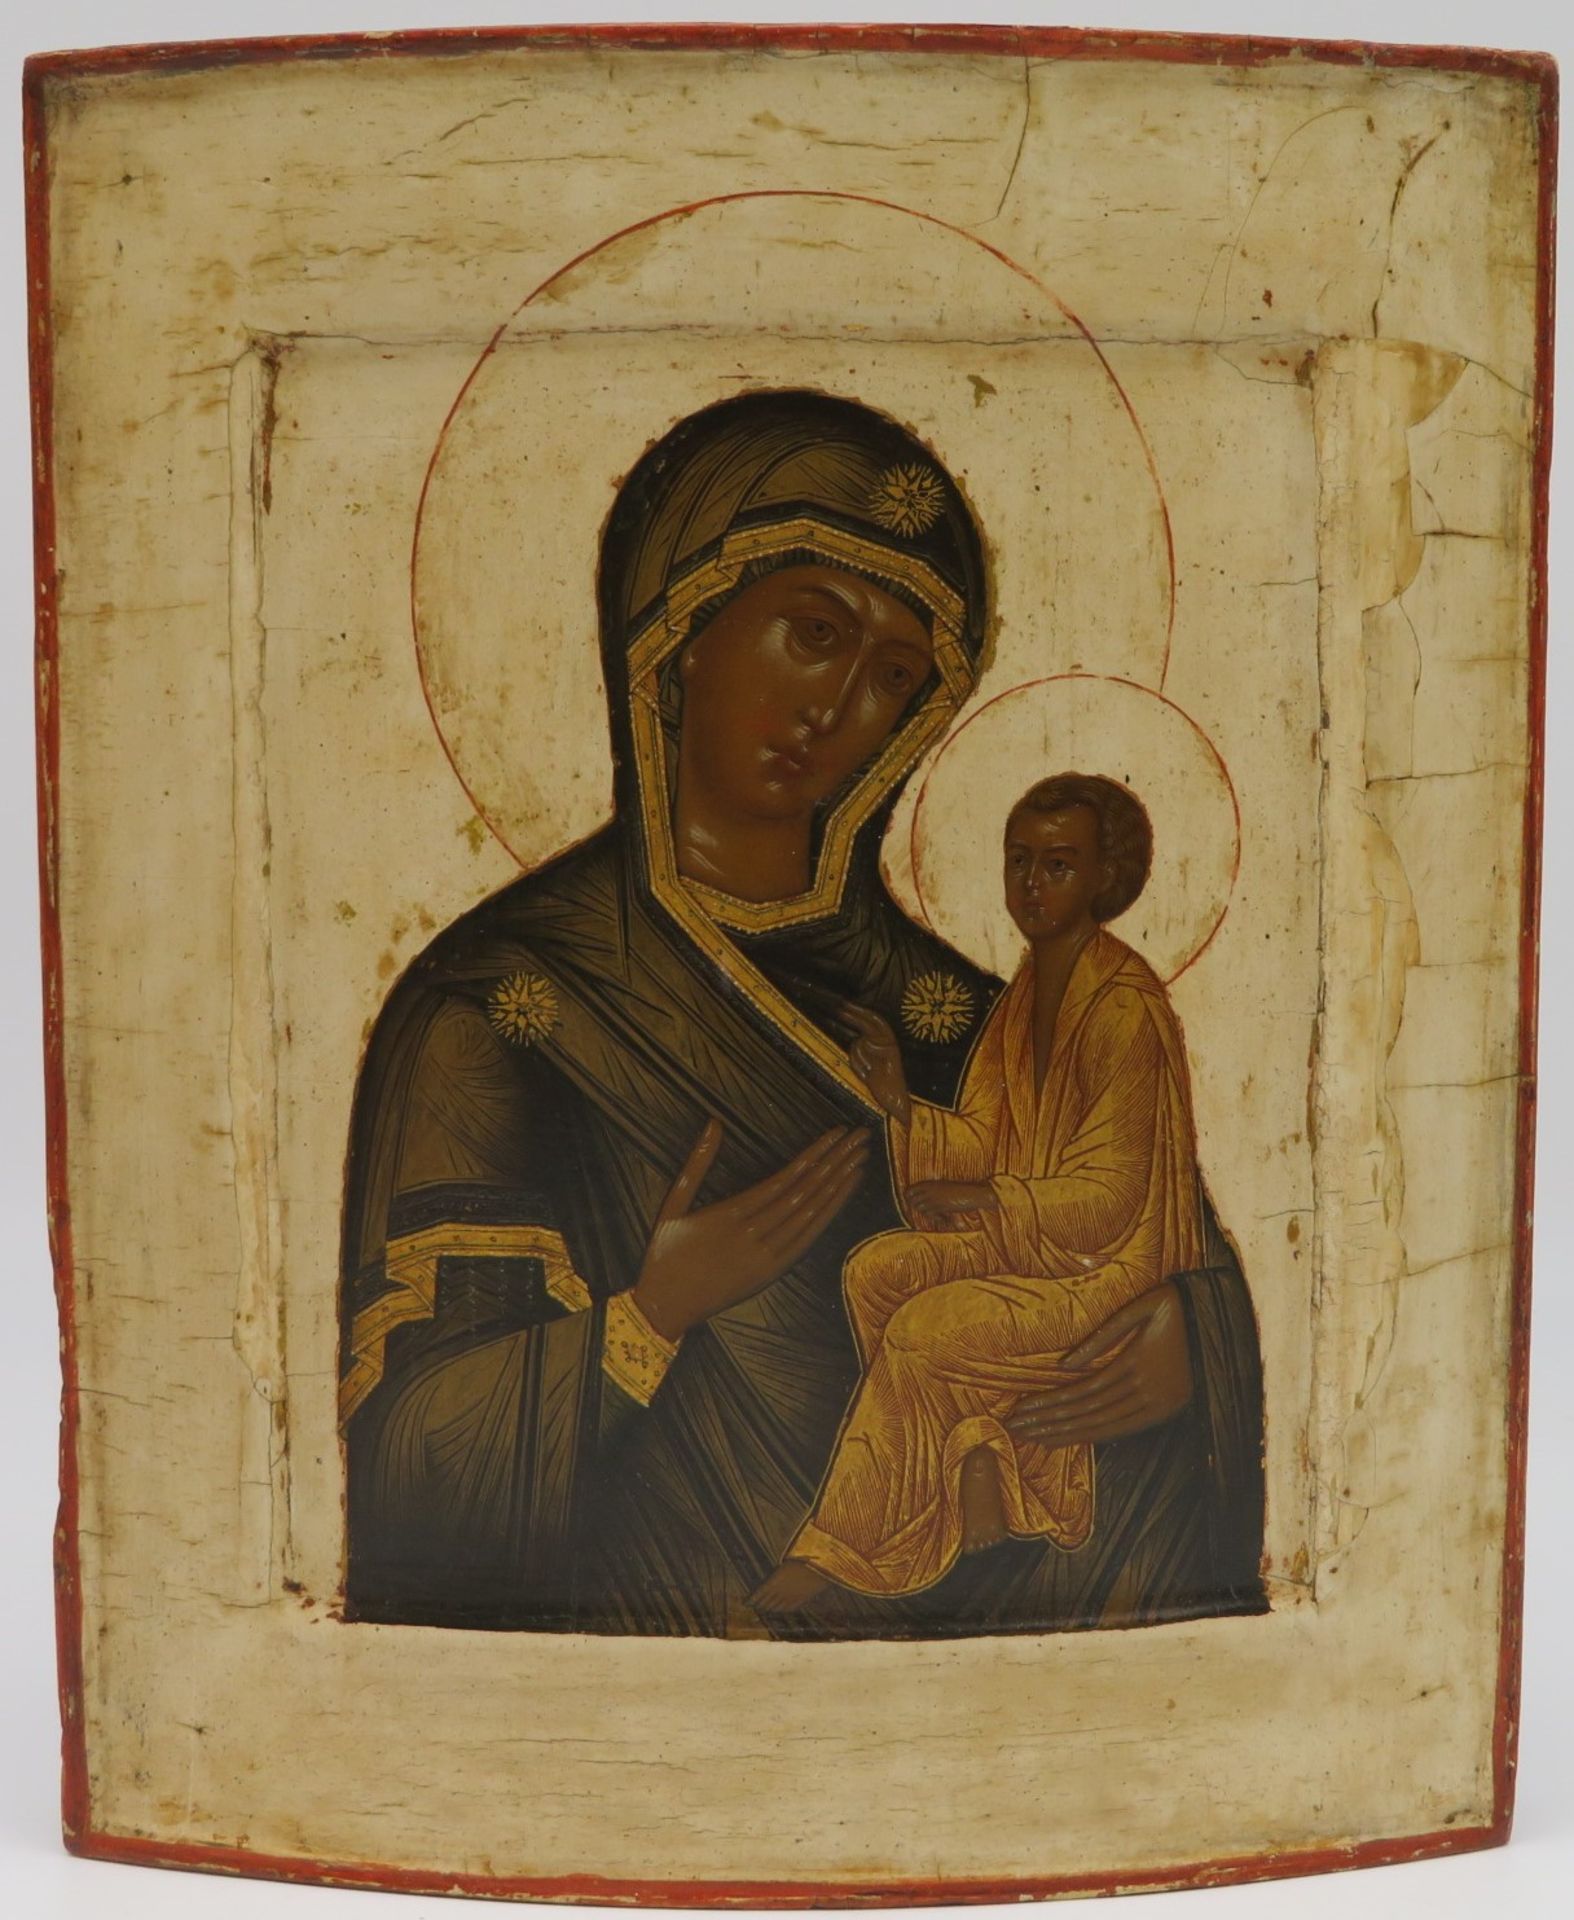 Ikone, Russland, 19. Jahrhundert, "Heilige Maria mit Kind", Eitemperamalerei, 27 x 23 cm.